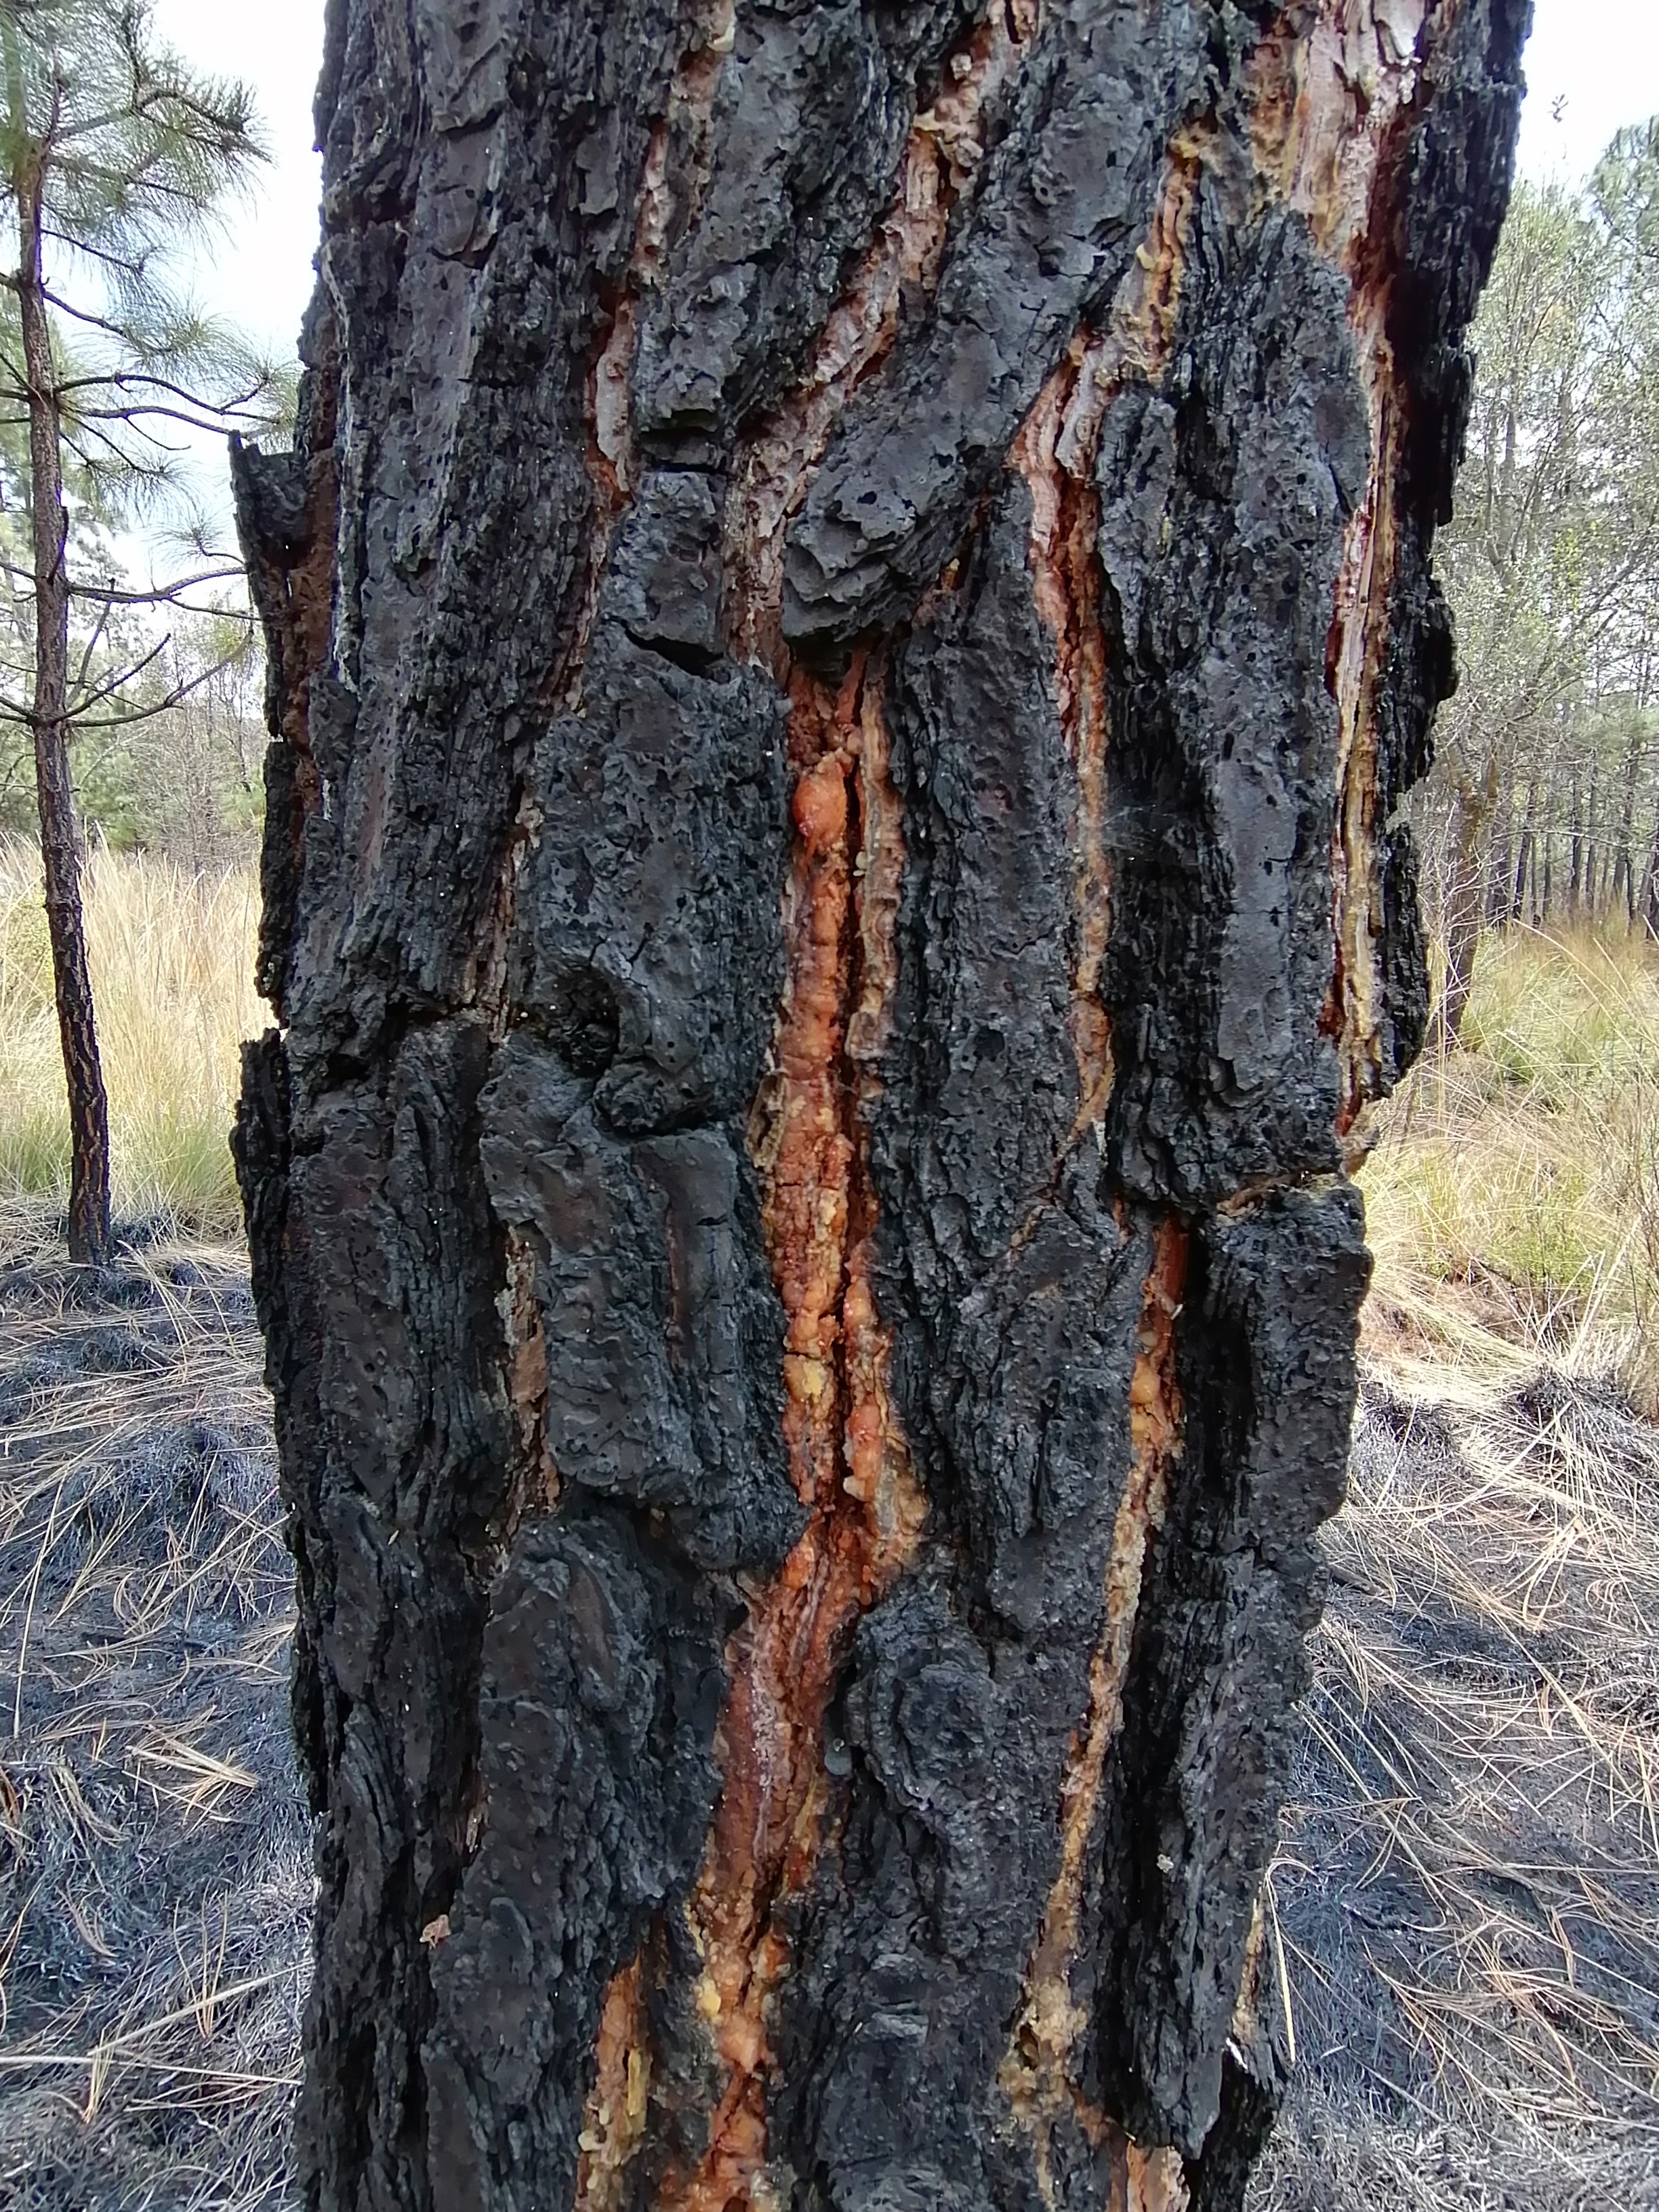 La corteza de los árboles de pino y encino es gruesa y contiene una resina que le permite quemarse junto con el fuego, y al mismo tiempo, impide que queme la parte interior del árbol. El árbol se asoma detrás de una cicatriz que tirará en unos meses para continuar creciendo. Fotografía del autor.